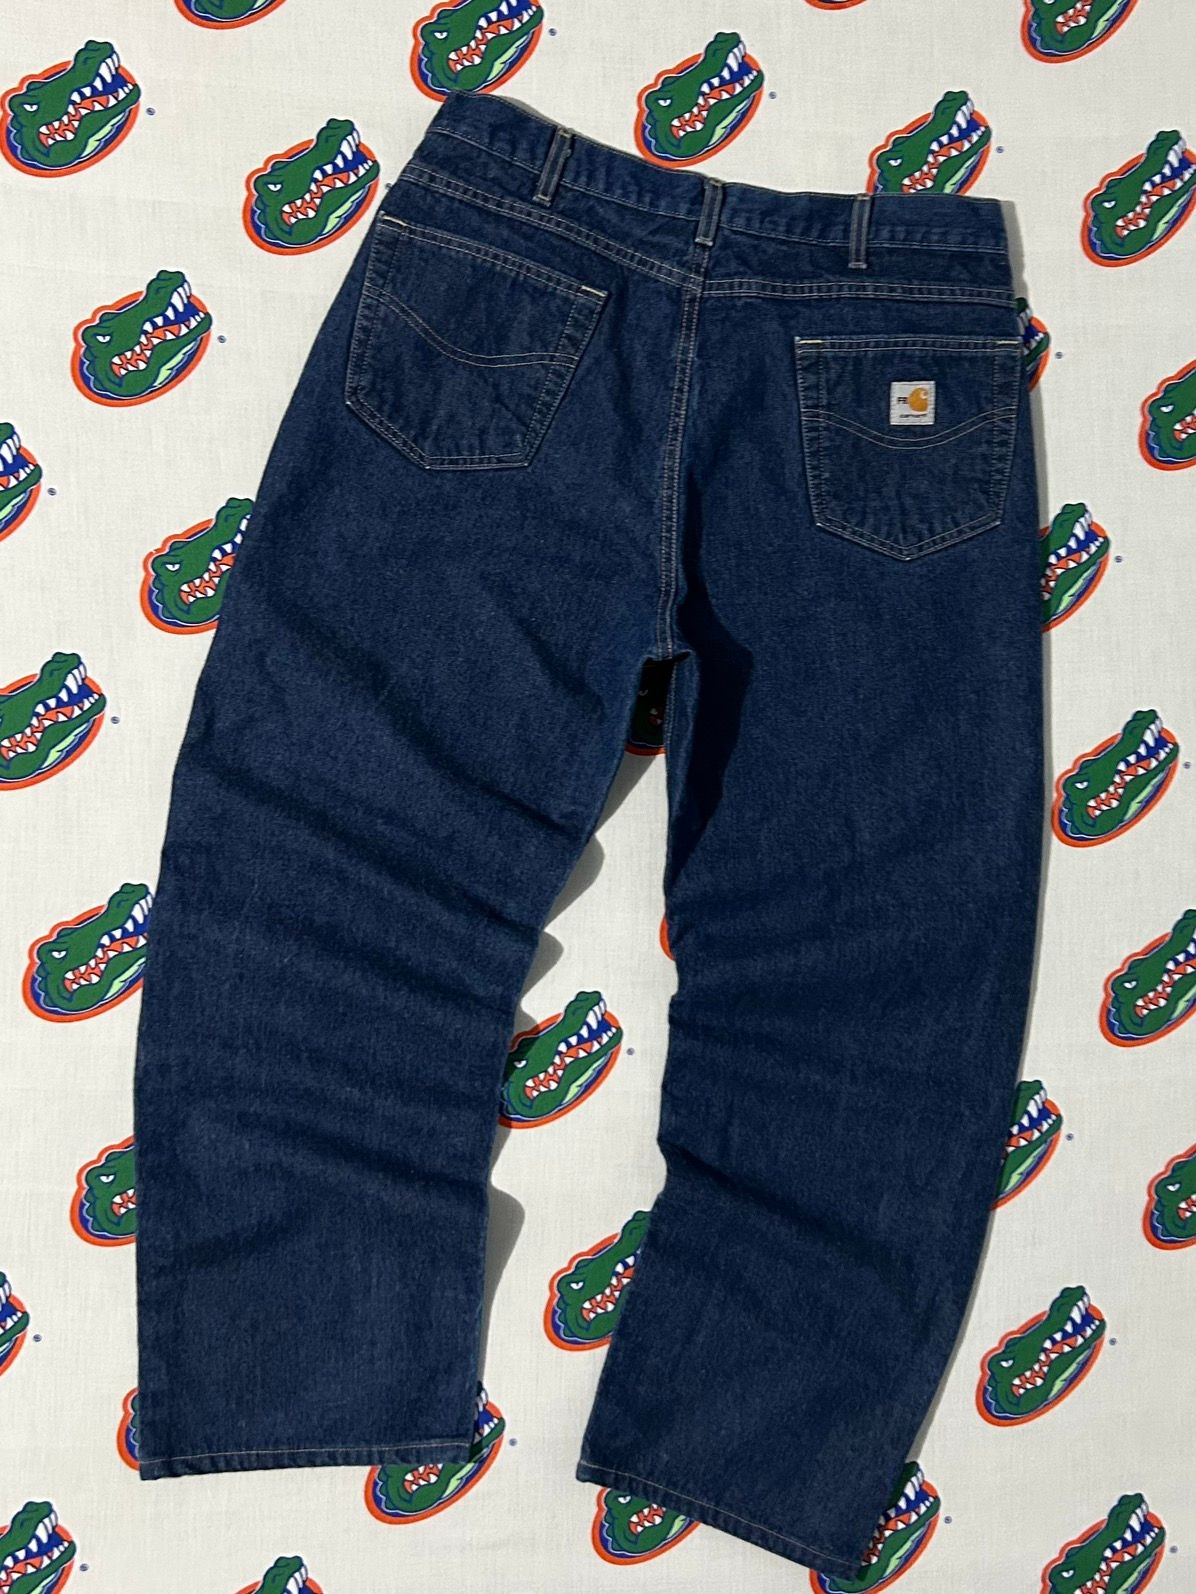 Vintage Mens Vintage Carhartt Fire Resistant Denim Jeans 36 x 30 Size US 36 / EU 52 - 1 Preview